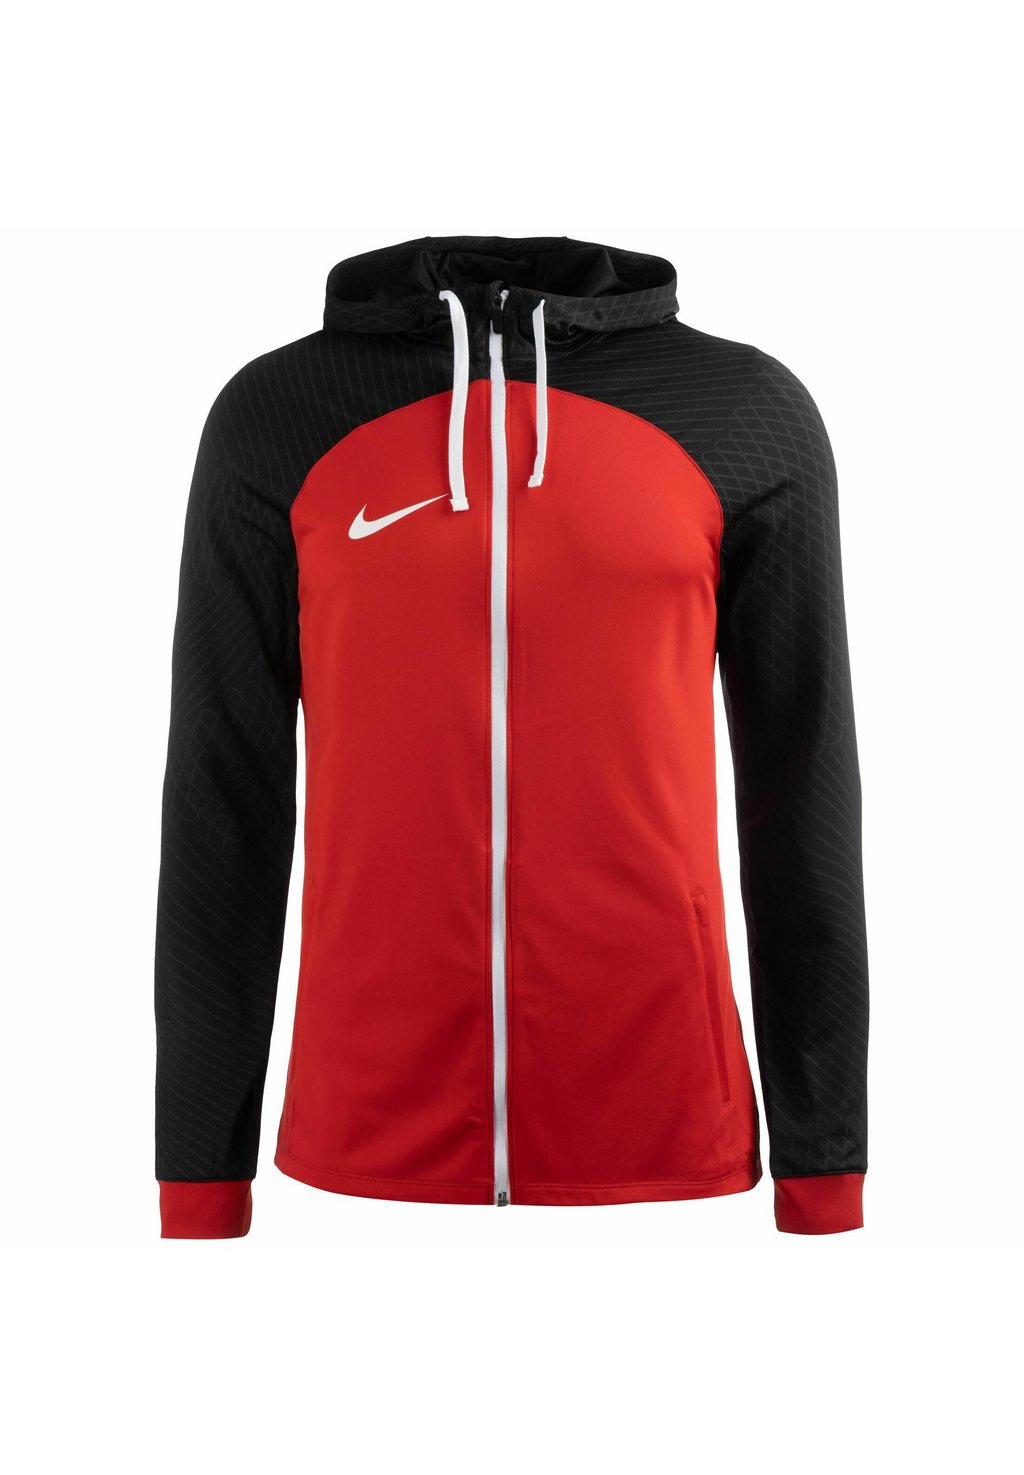 Спортивная куртка Nike Strike 23 Dri-Fit, университетский красный черный антрацитовый белый